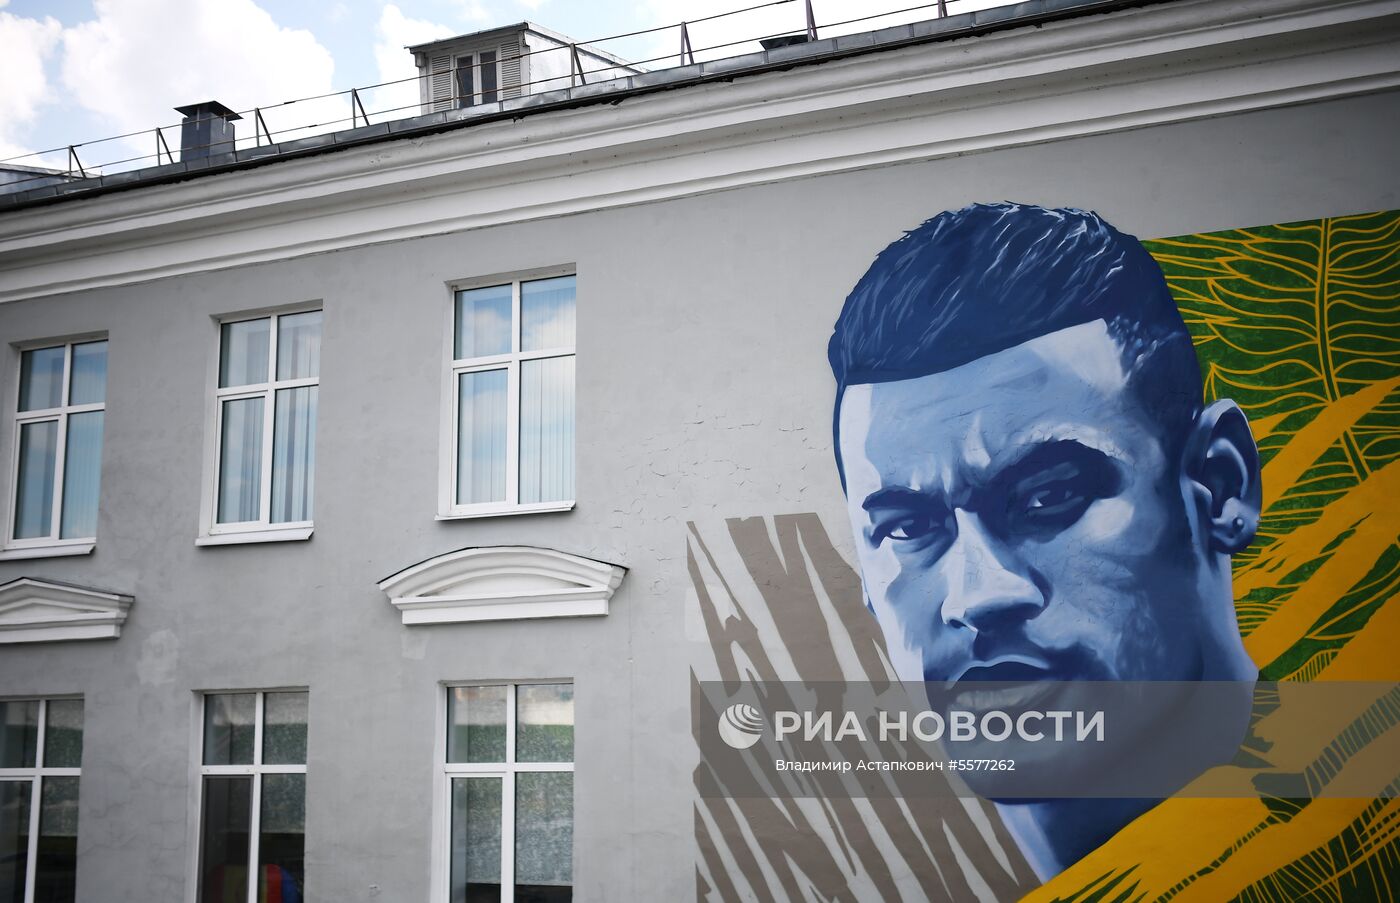 Граффити с Неймаром появилось в Казани